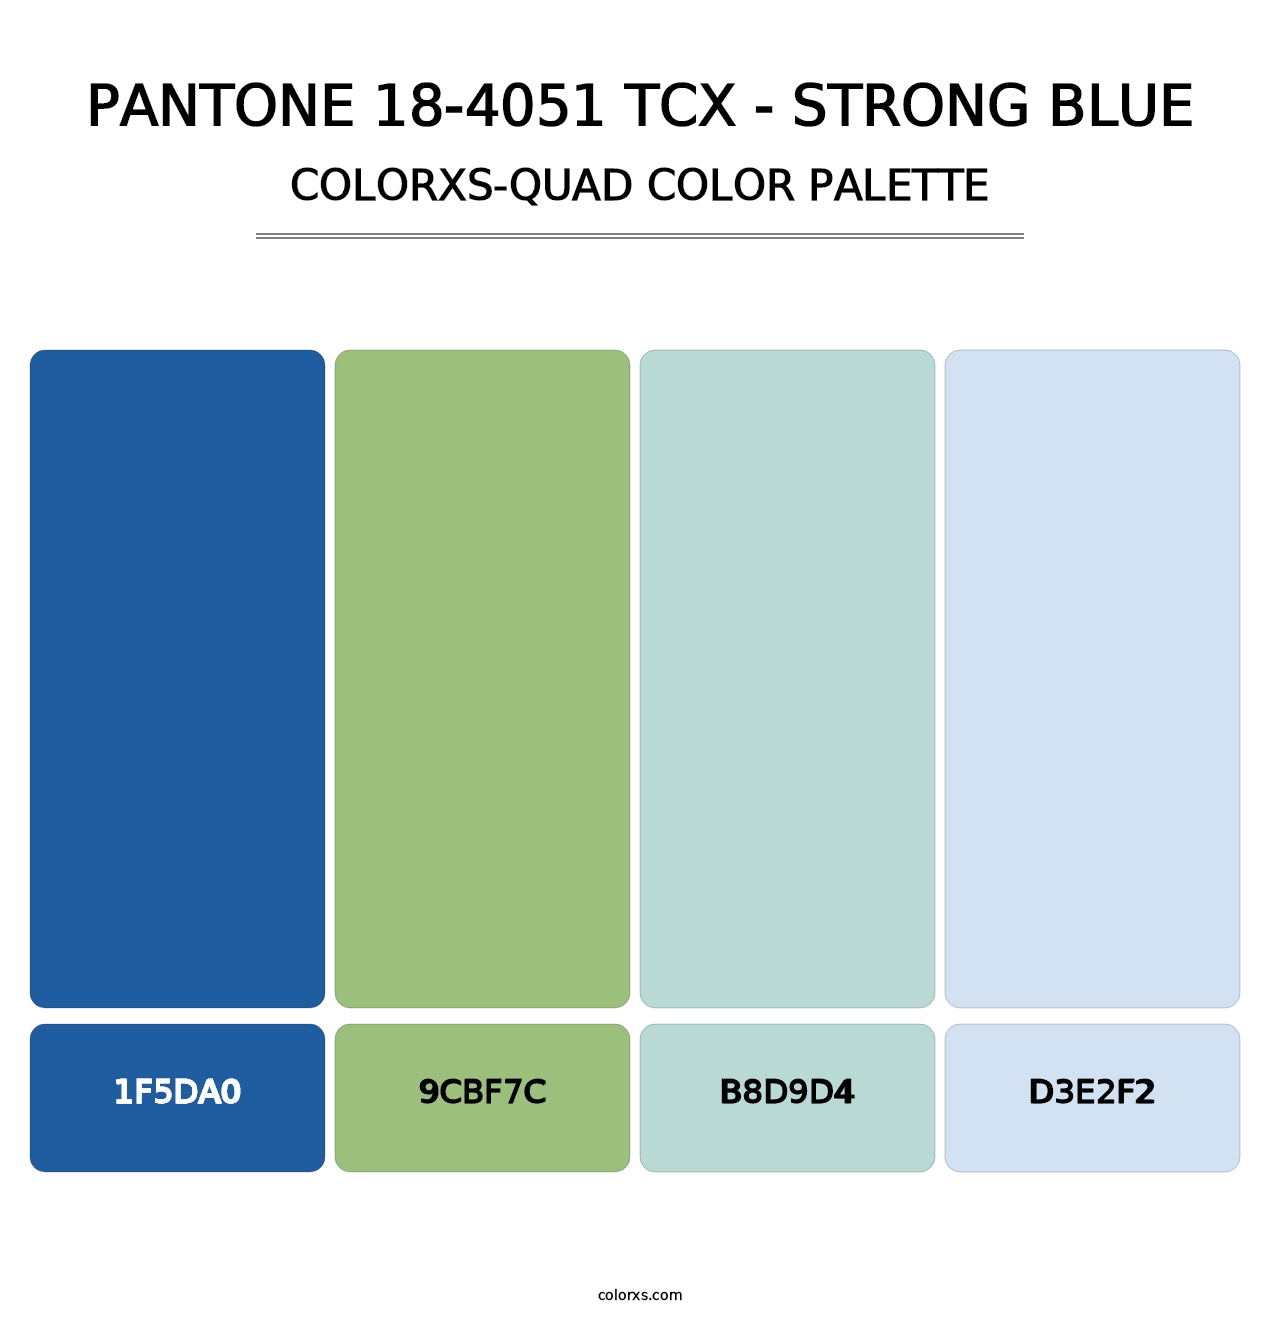 PANTONE 18-4051 TCX - Strong Blue - Colorxs Quad Palette